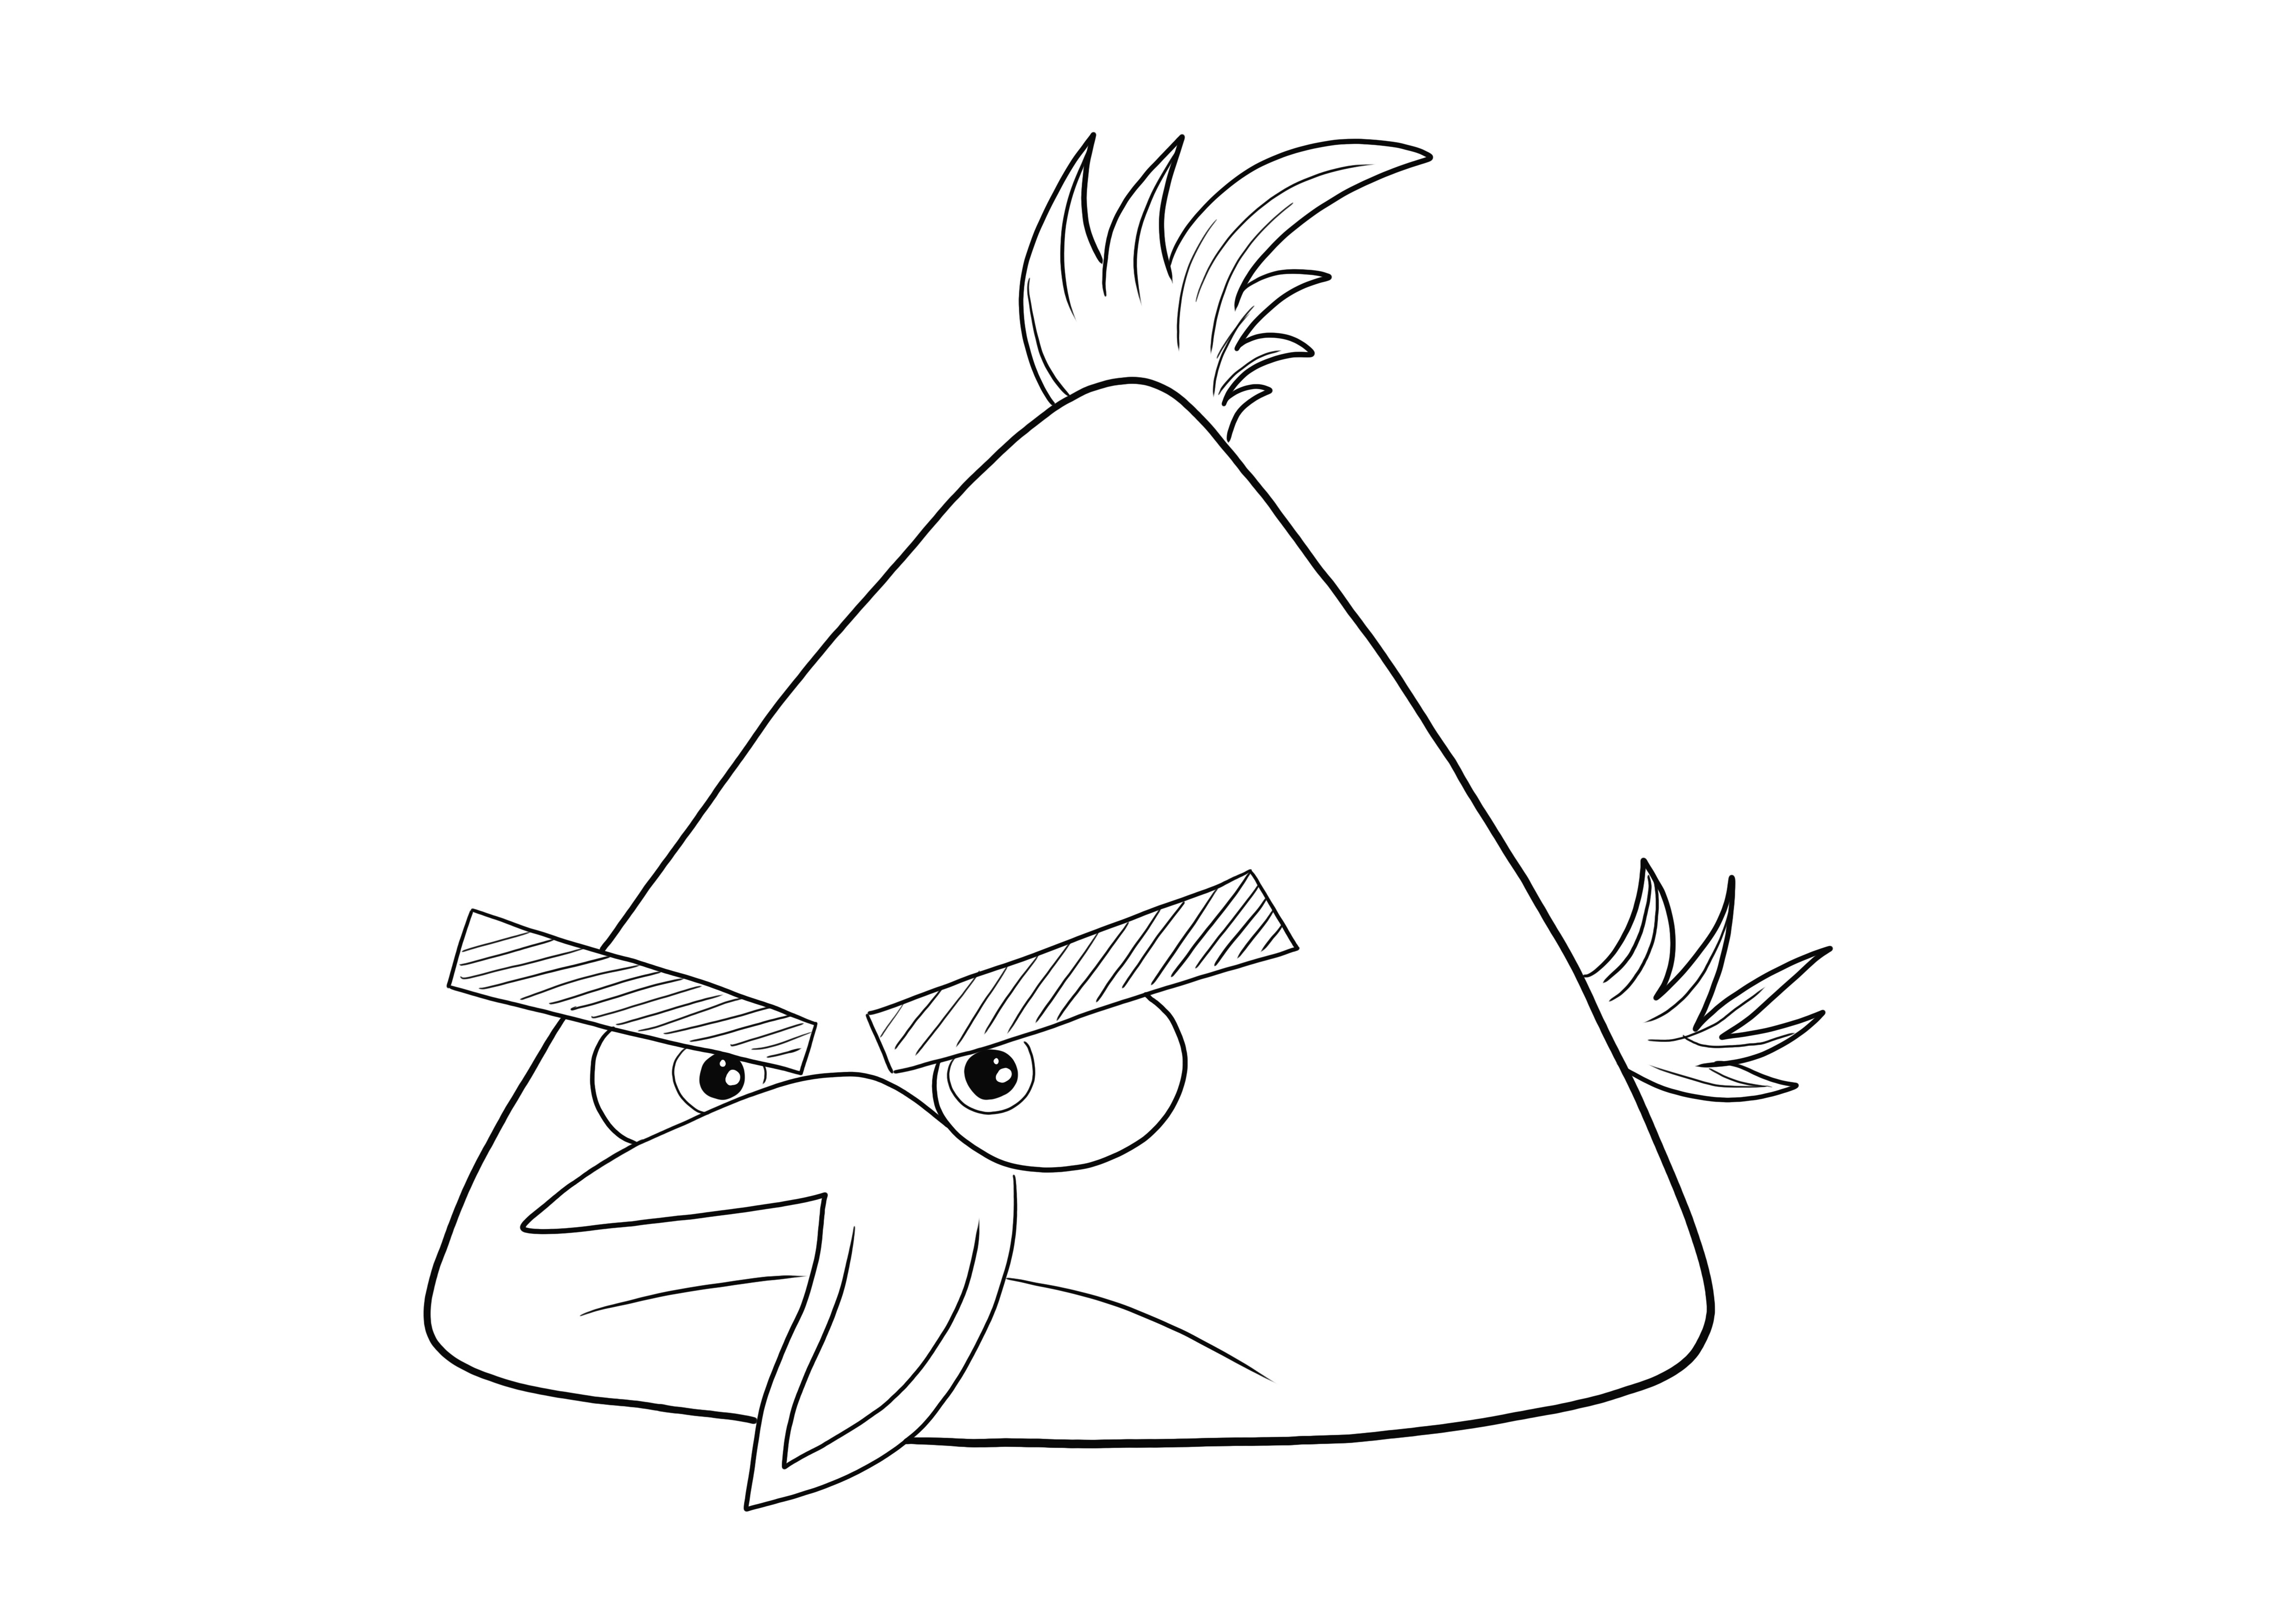 Chuck the Yellow Bird z kreskówki Angry Birds do wydrukowania i pokolorowania za darmo